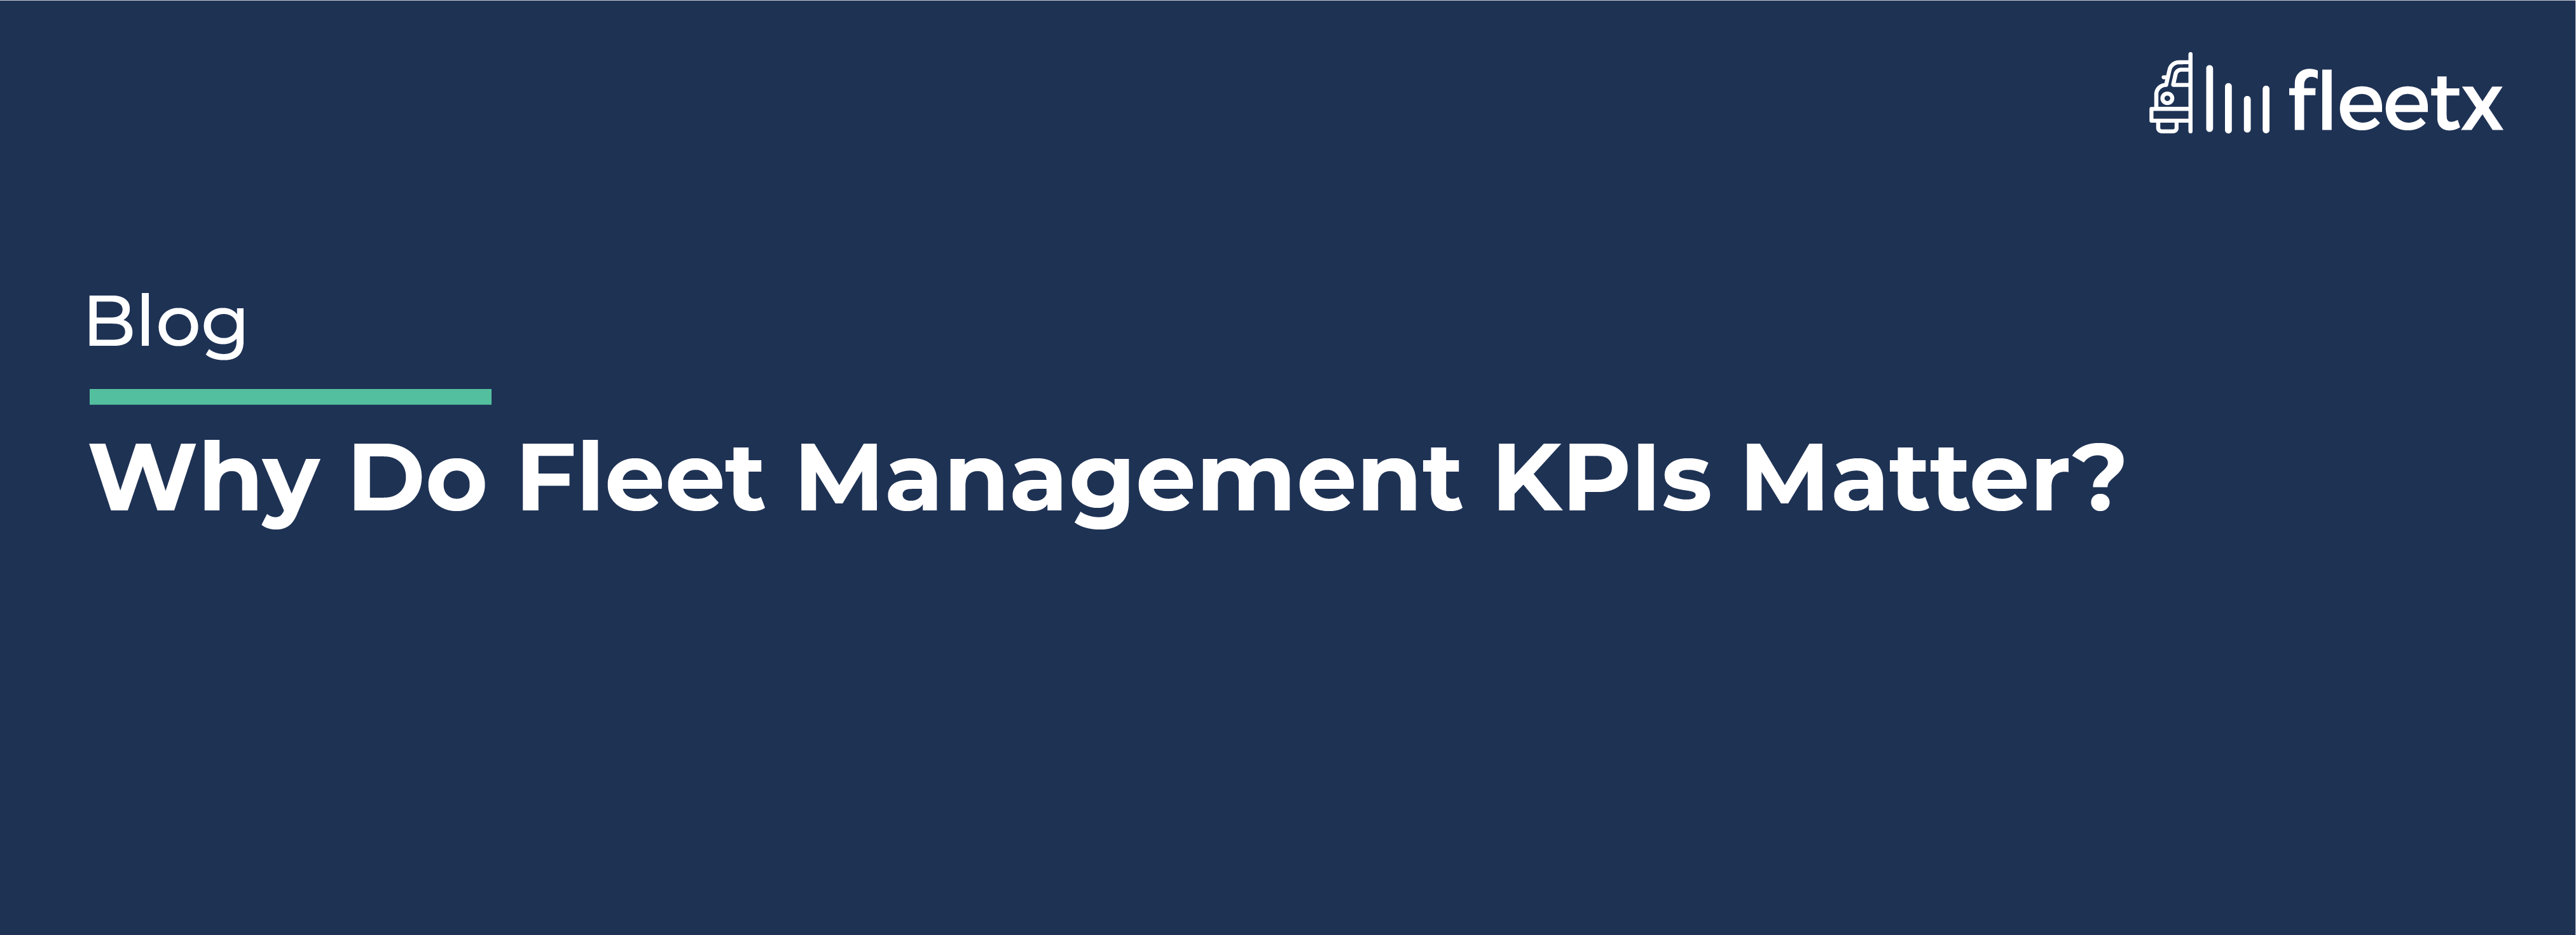 Why Do Fleet Management KPIs Matter?